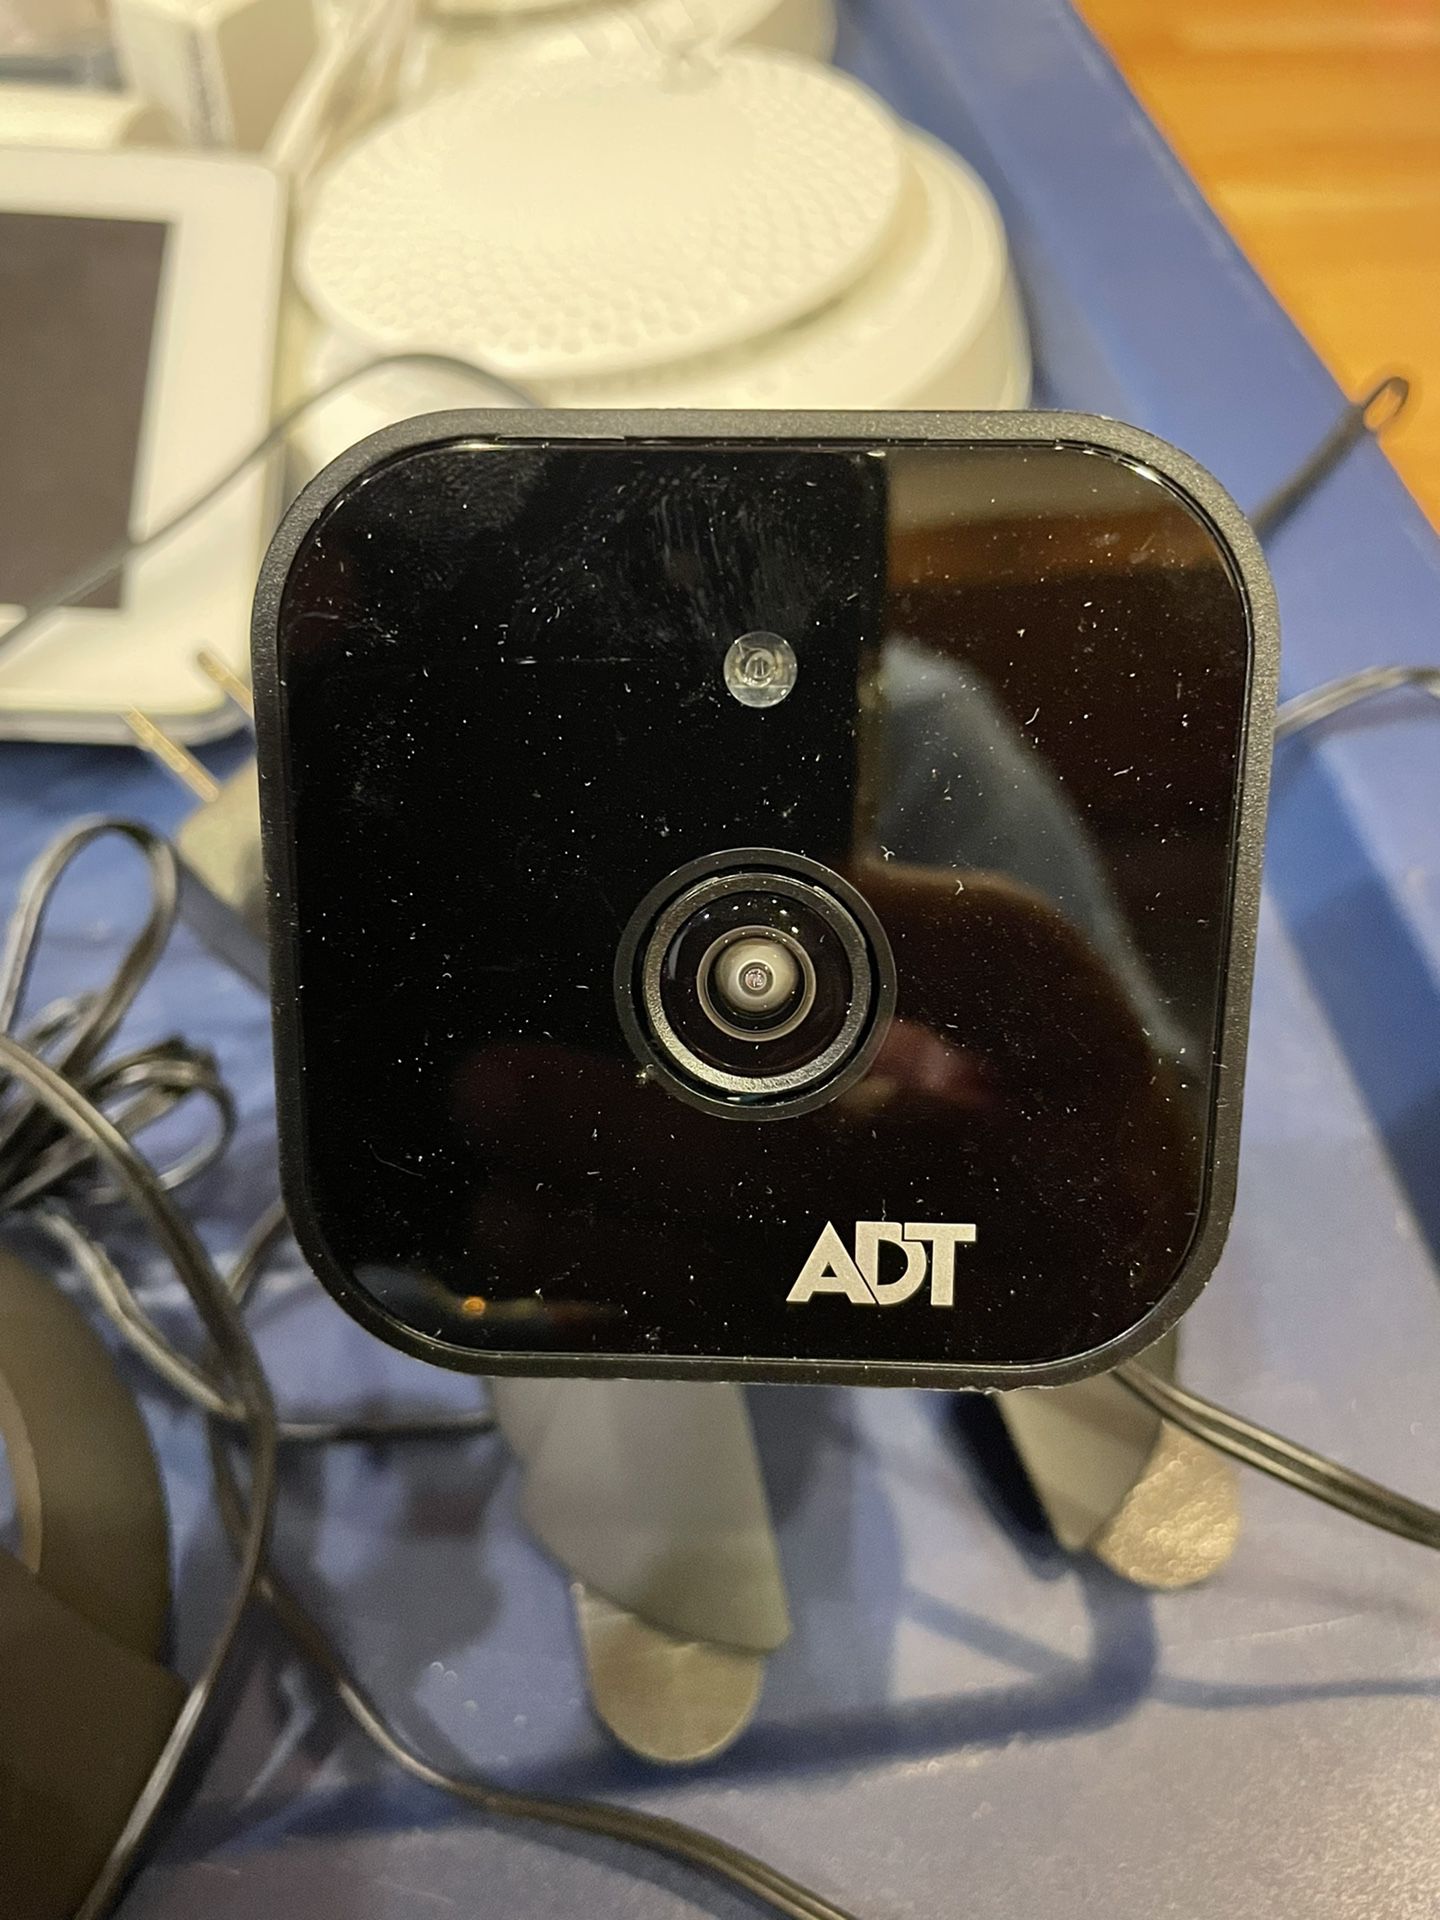 ADT Indoor Cameras - Newest Model